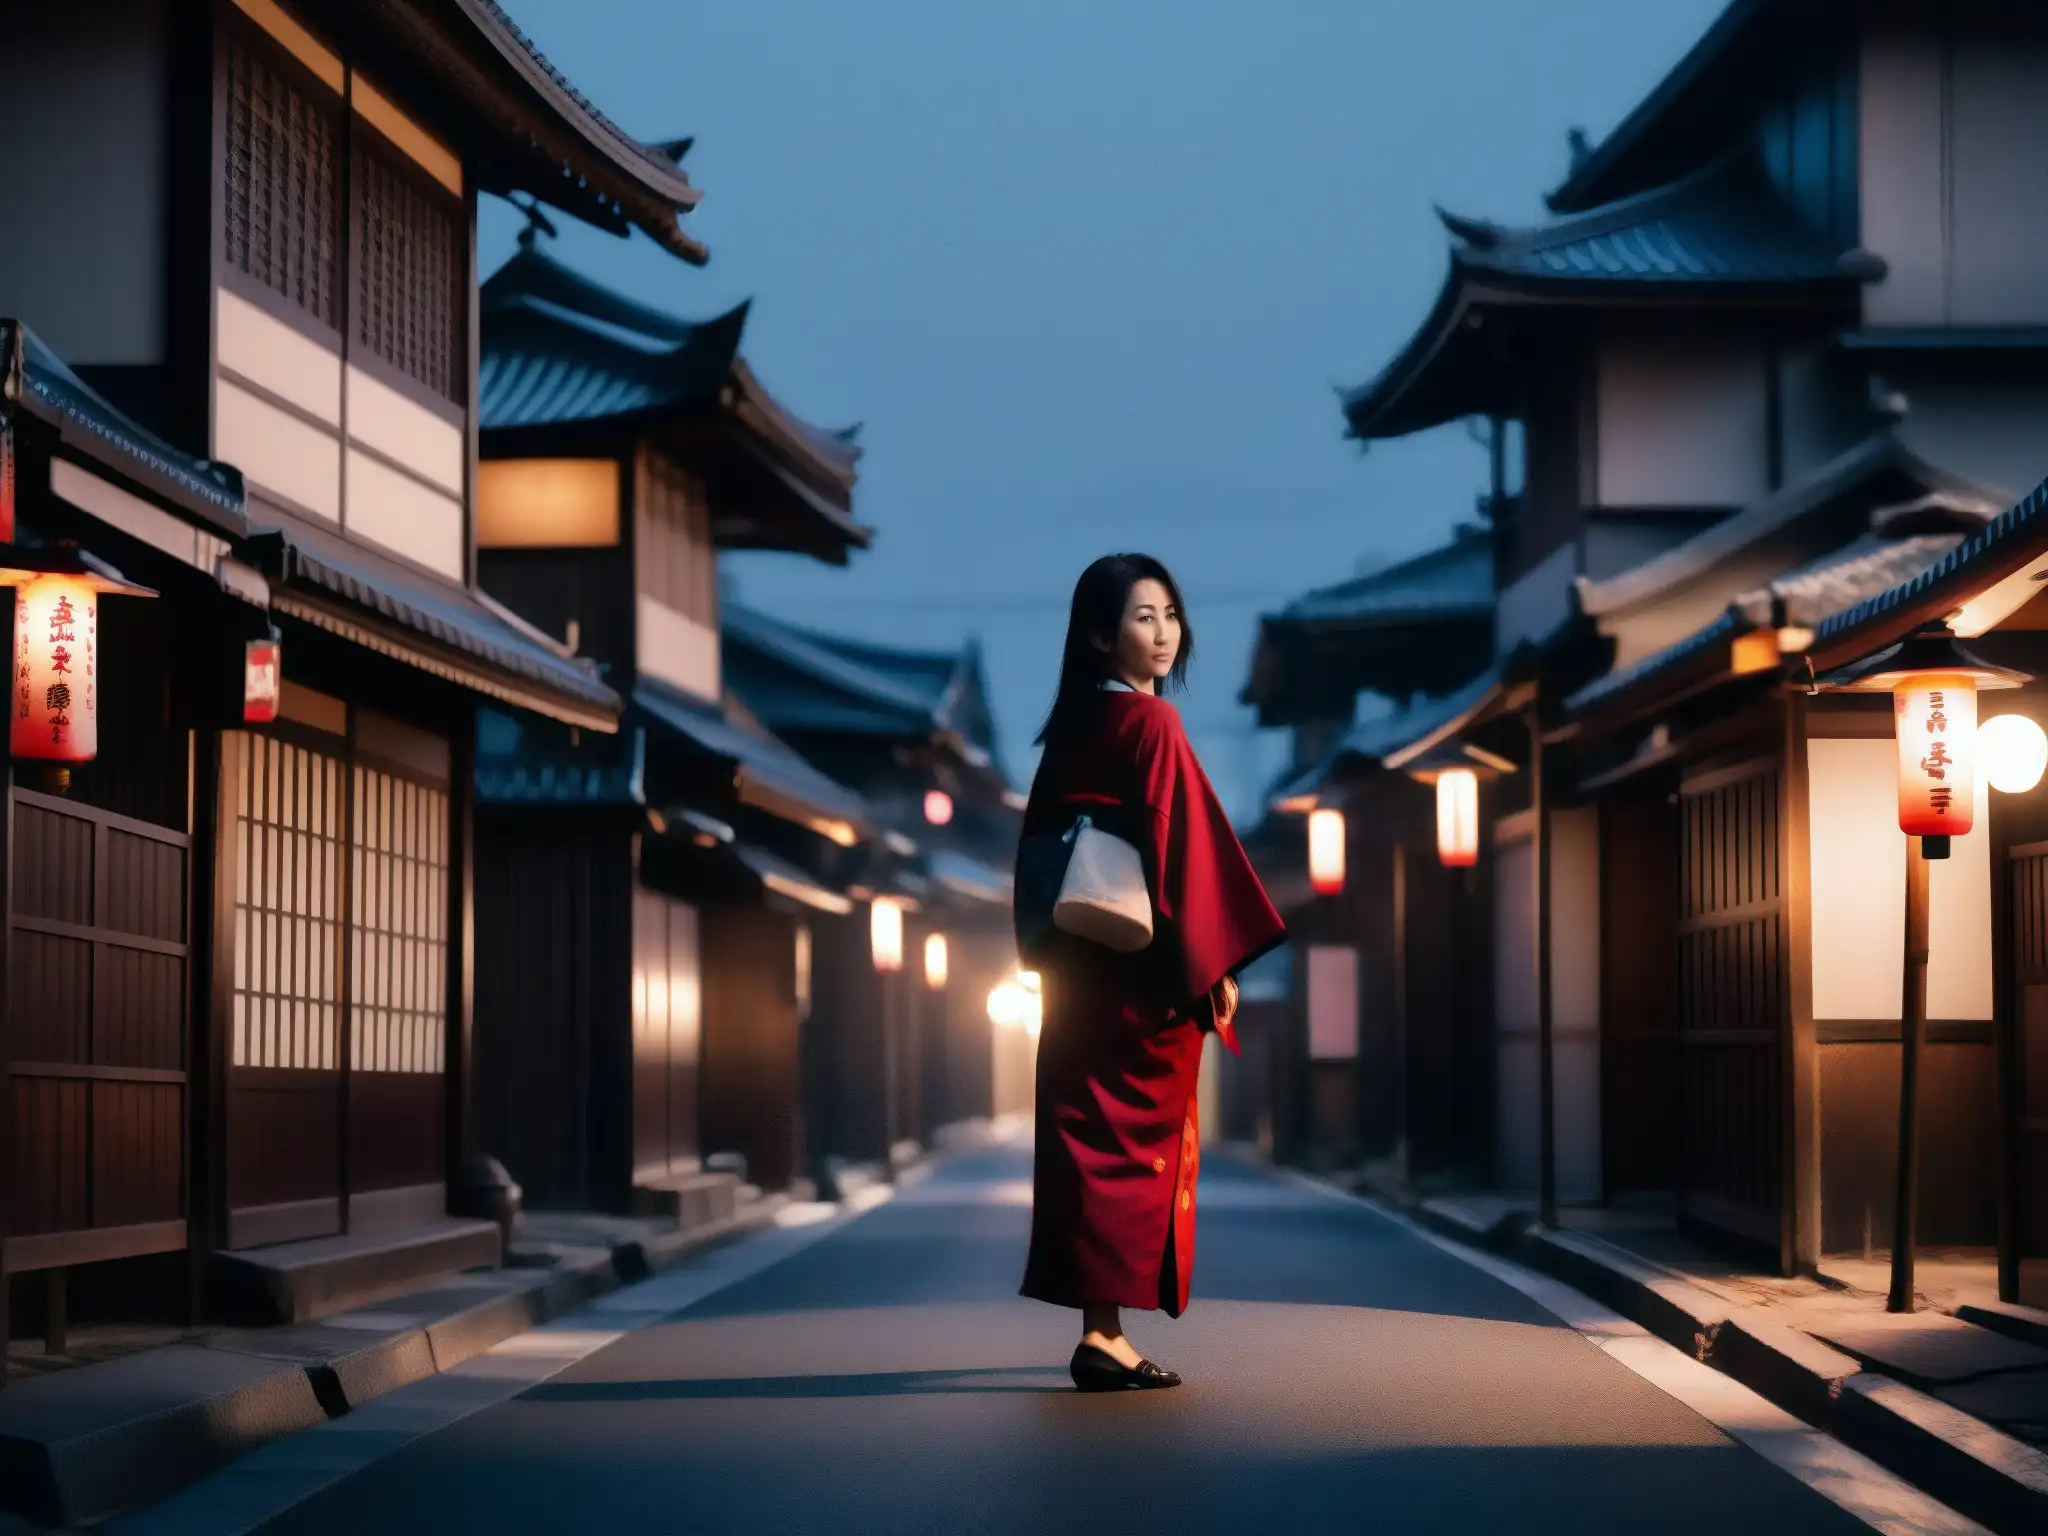 En una calle japonesa desolada, una figura siniestra con un kimono ensangrentado y una sonrisa escalofriante sostiene una hoja plateada